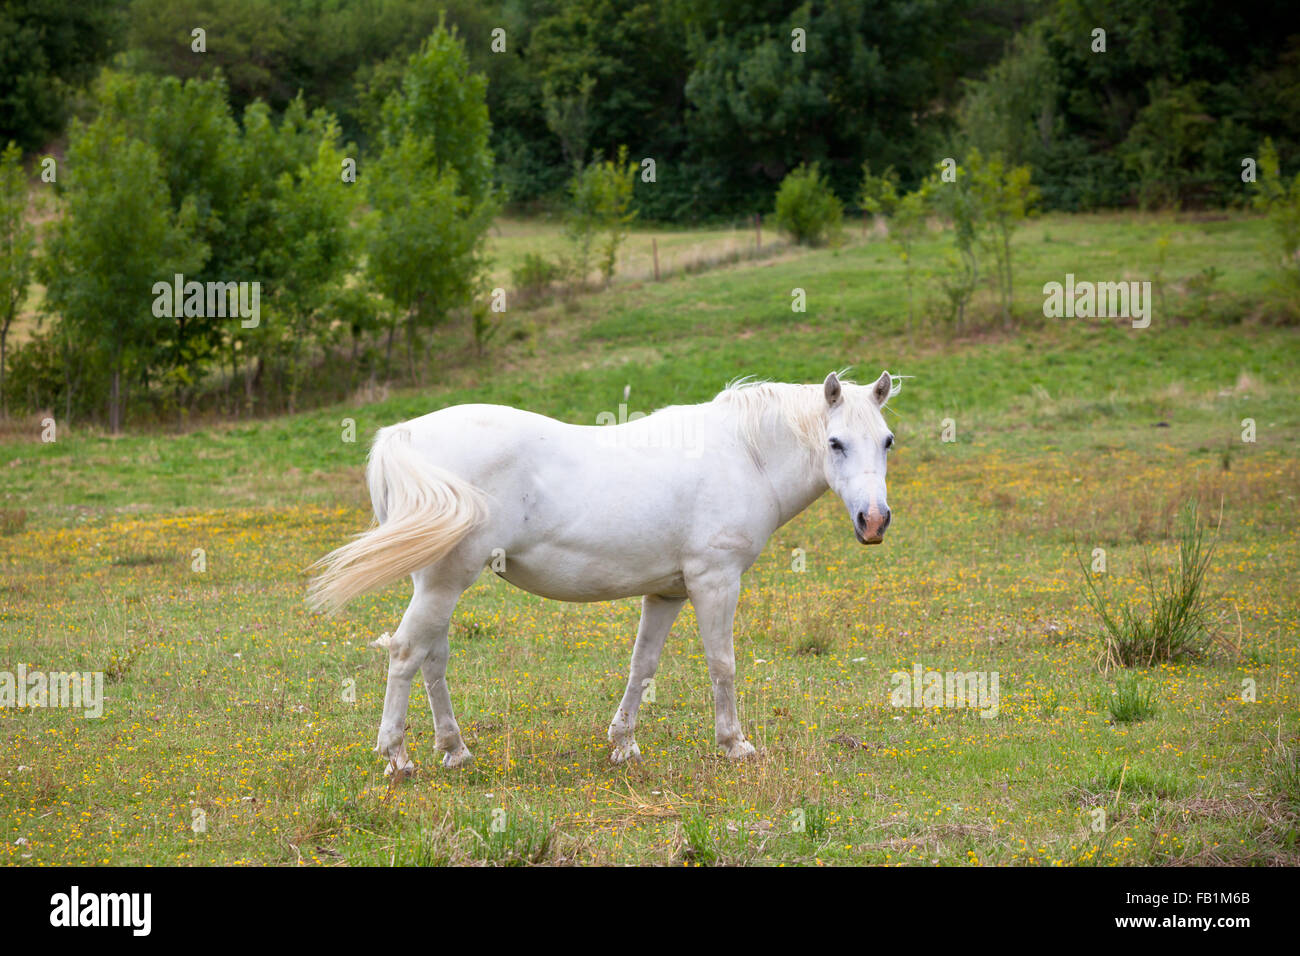 Cavallo bianco in un campo Verde di erba. Inquadratura orizzontale Foto Stock